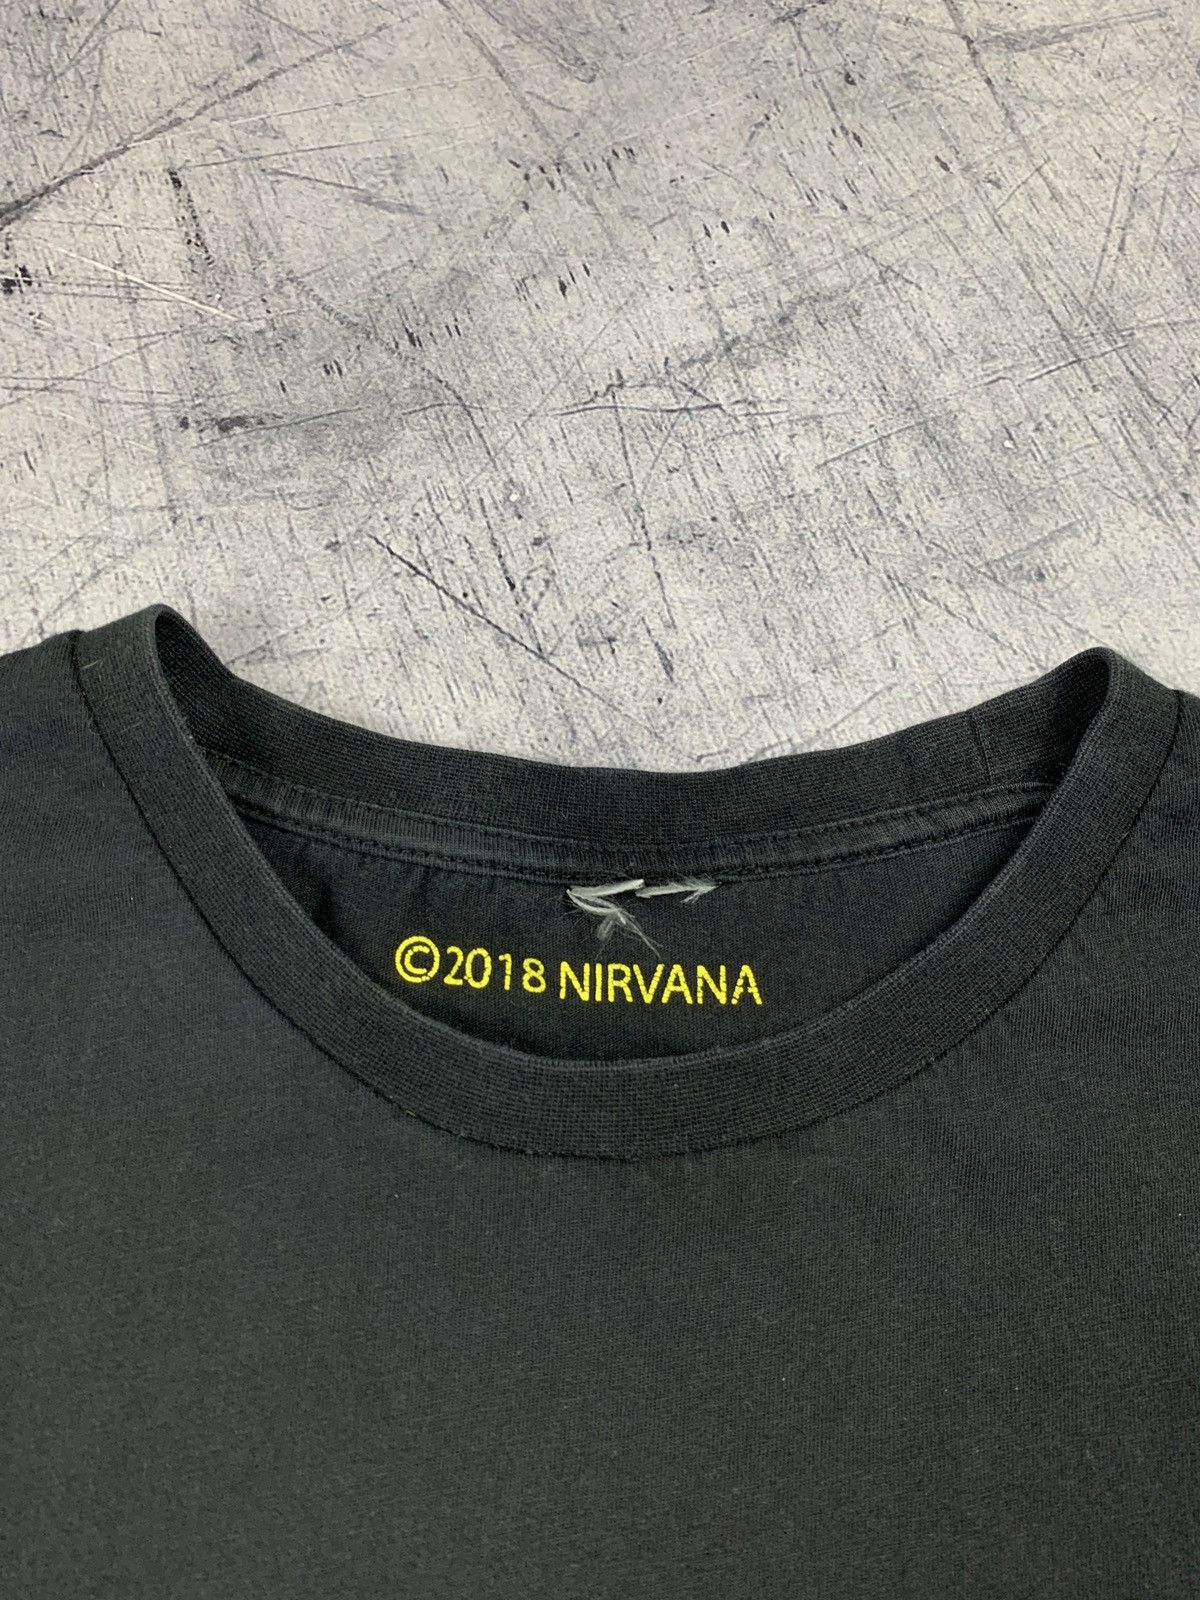 Nirvana Vintage Nirvana Smile Rock Band Tour Graphic Tee Size US M / EU 48-50 / 2 - 7 Thumbnail